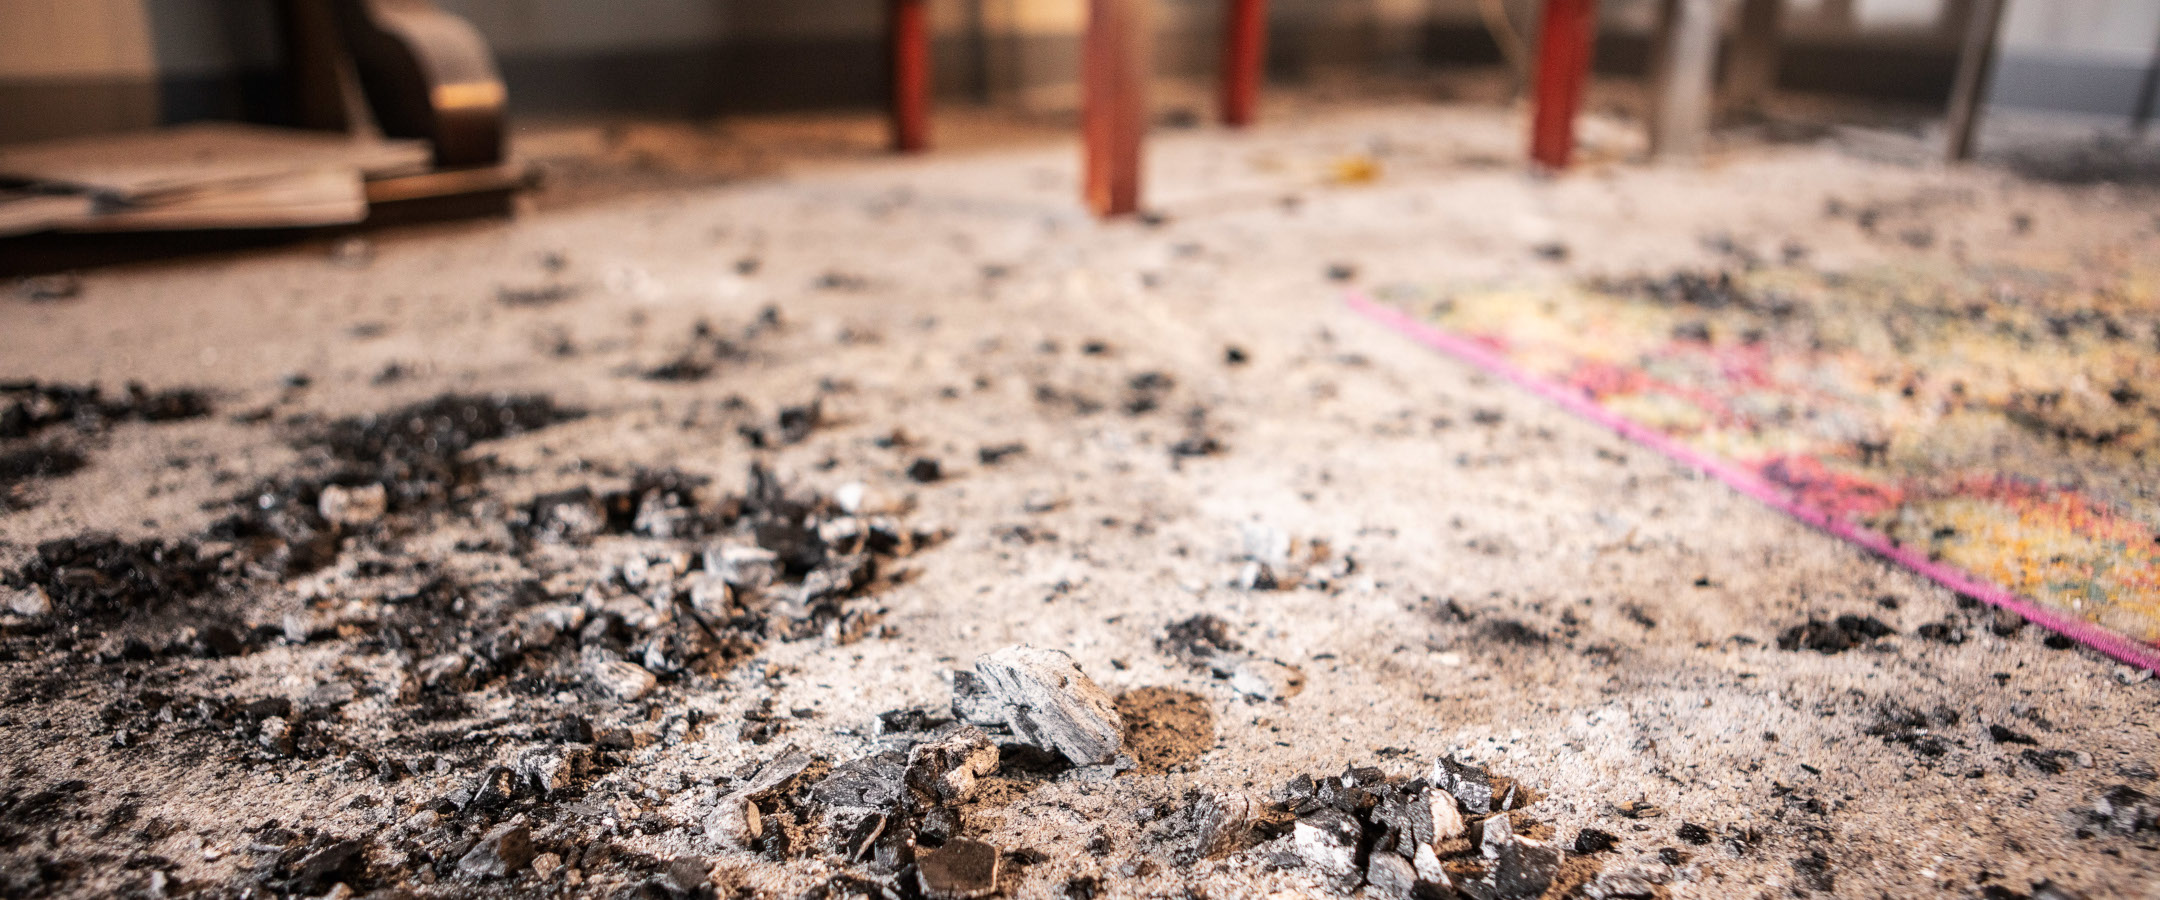 ¿Cómo pueden afectar los daños causados por el fuego y el humo a su hogar?